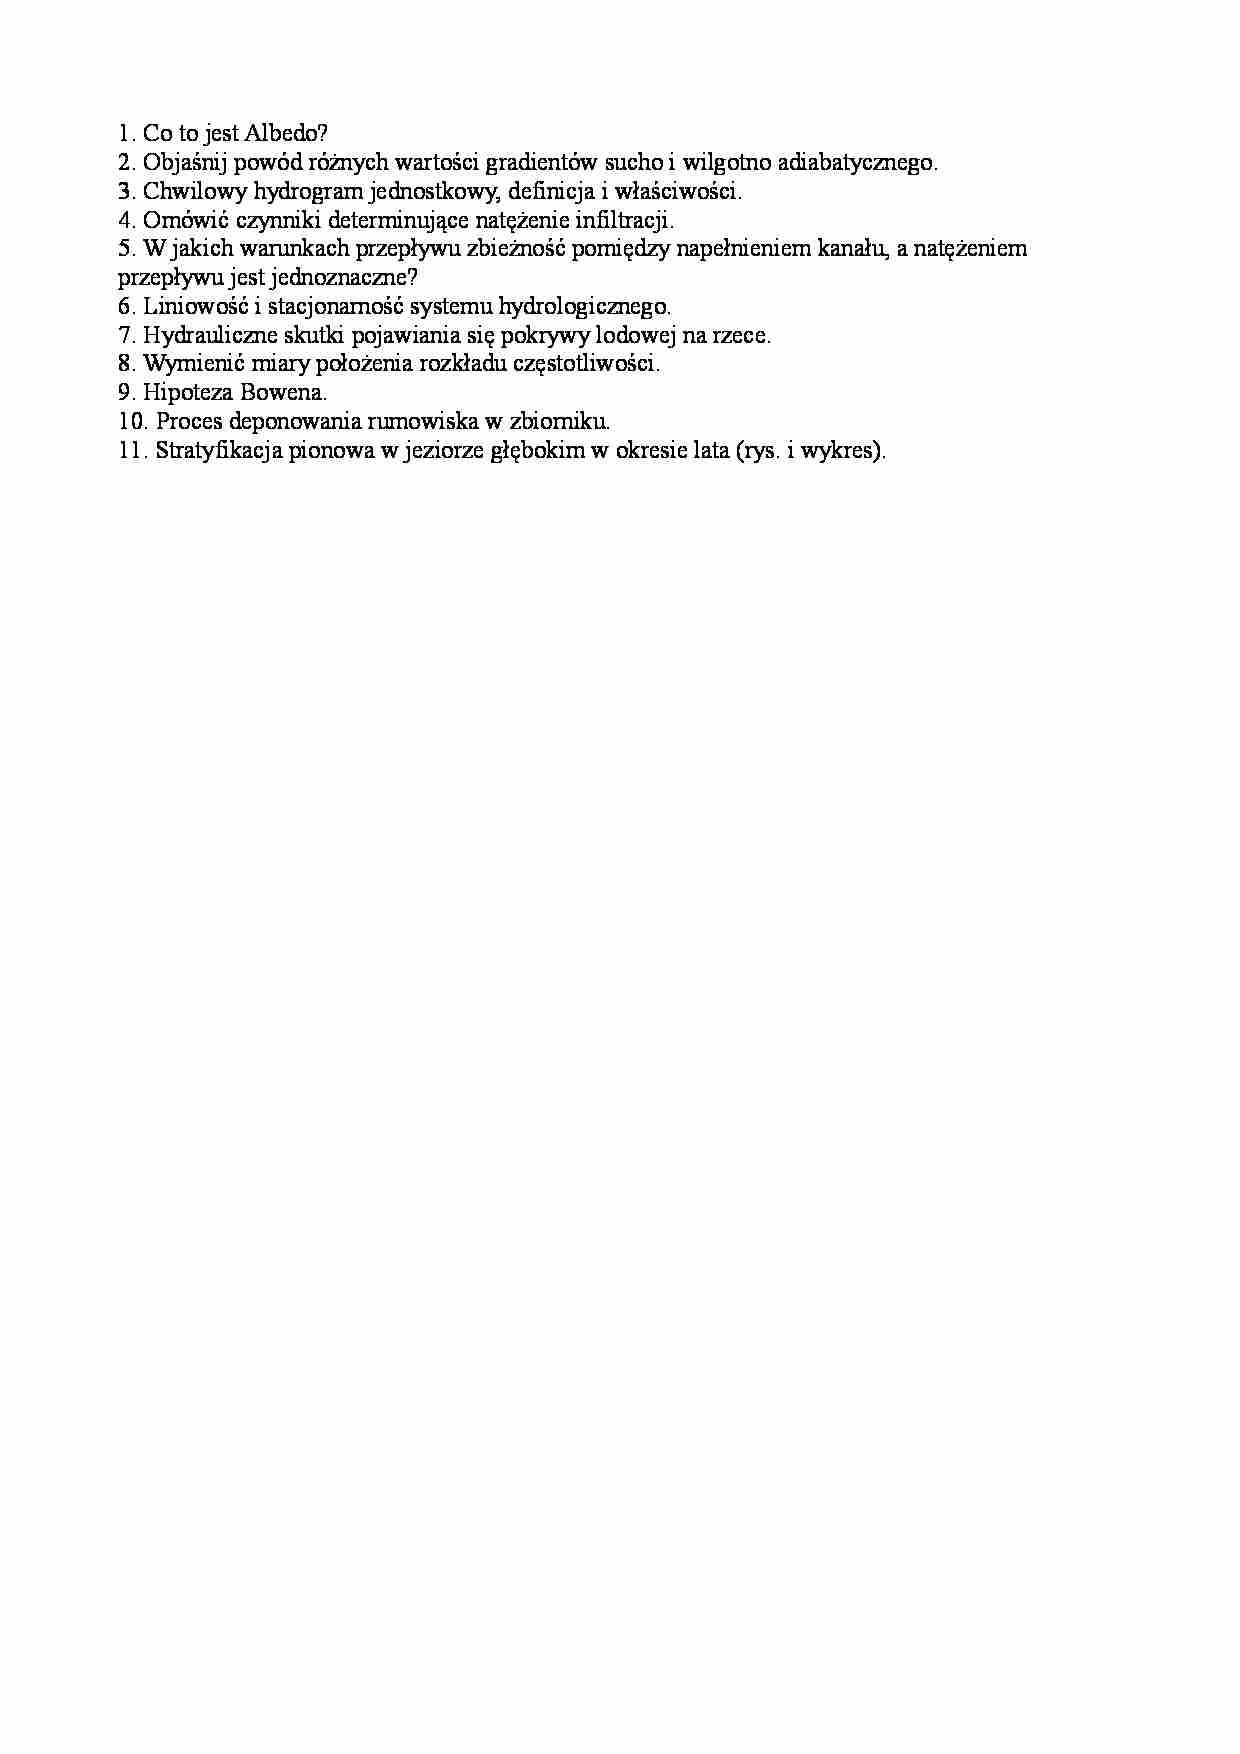 Hydrologia - pytania z egzaminu - termin zerowy - strona 1